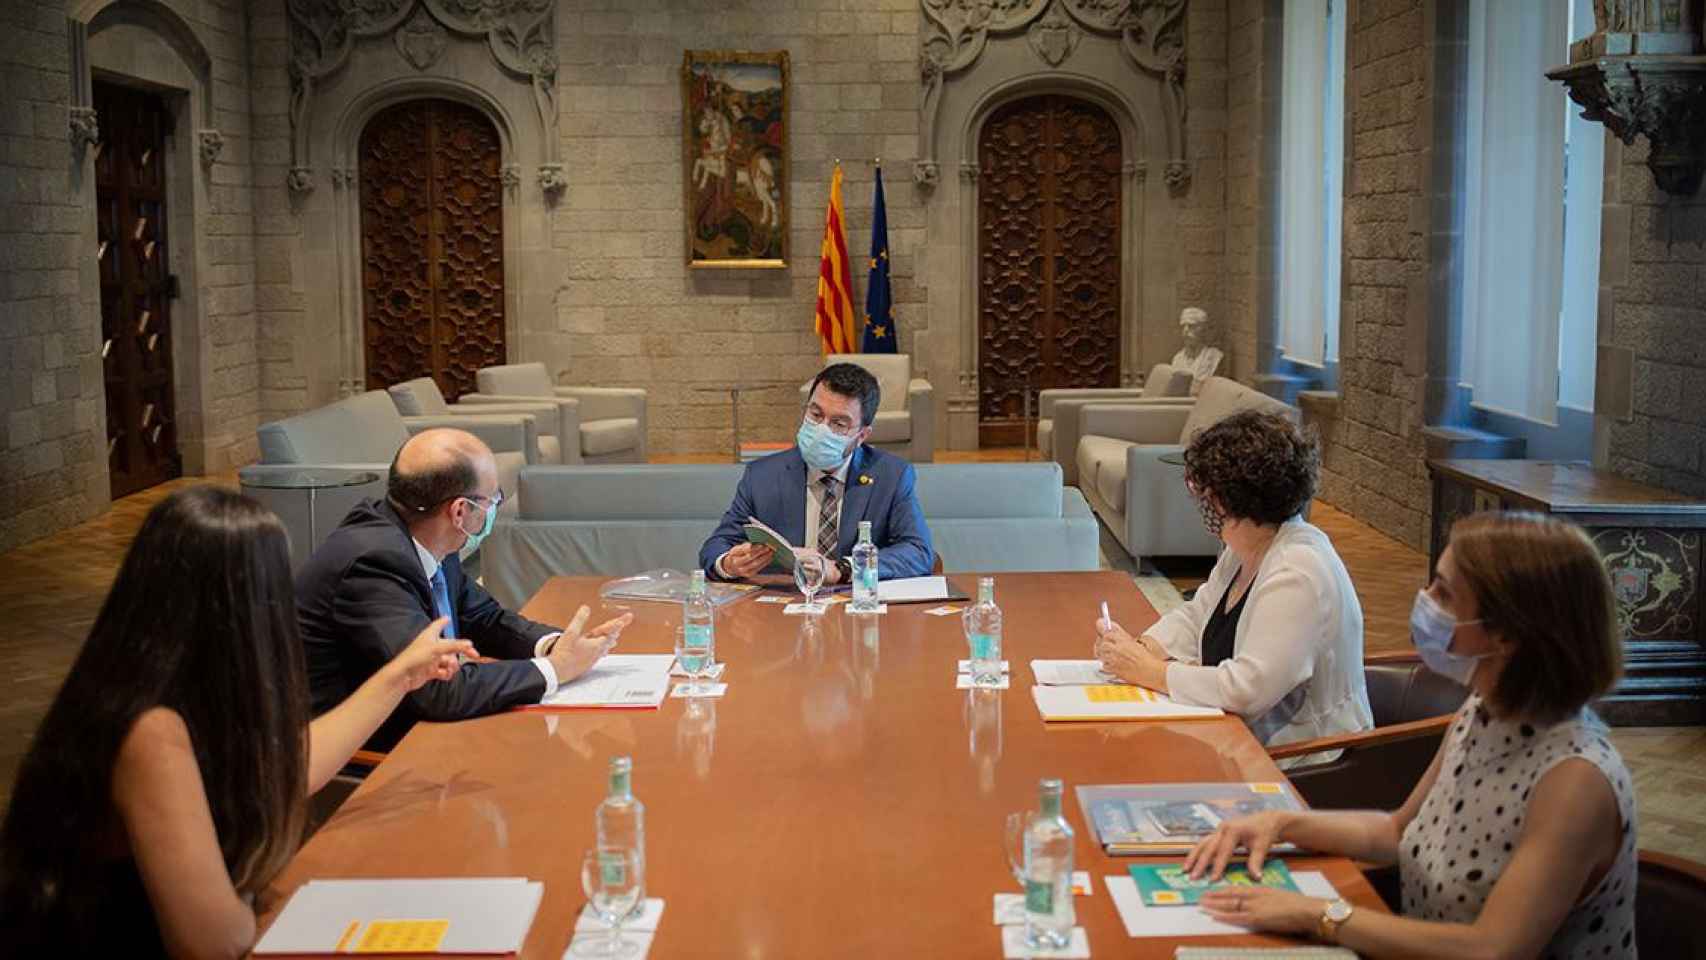 Pere Aragonès se reúne con representantes de Plataforma per la Llengua, todos ellos contrarios al castellano/ EP